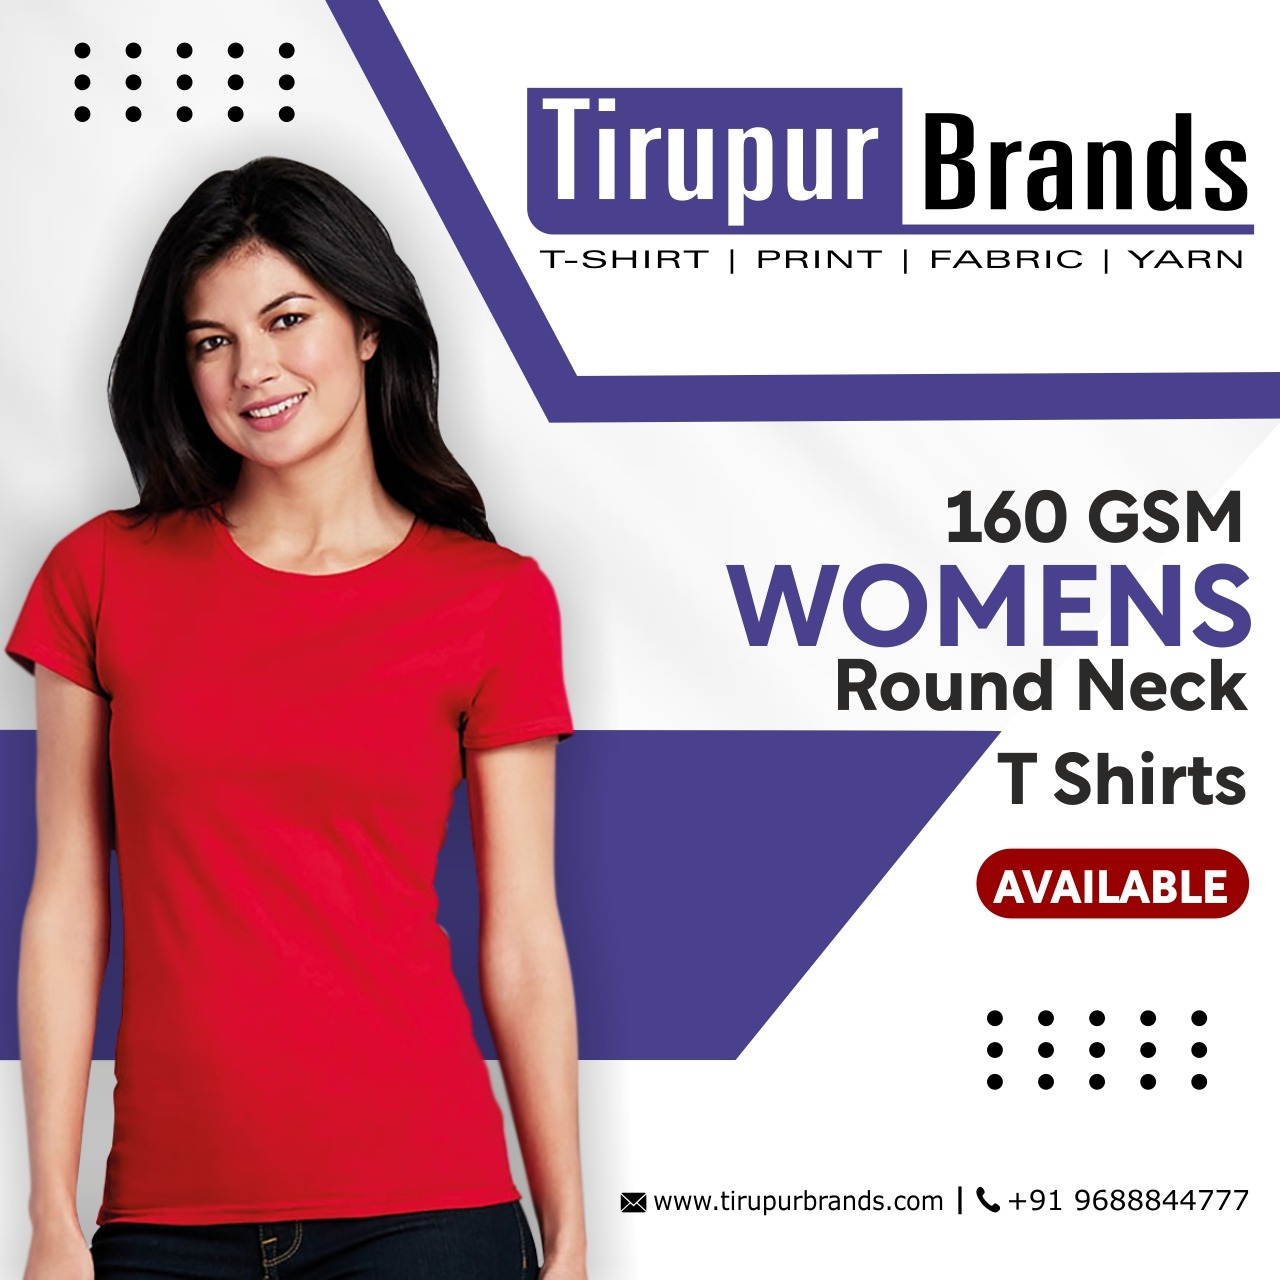 Women's round neck t-shirts in Tirupur